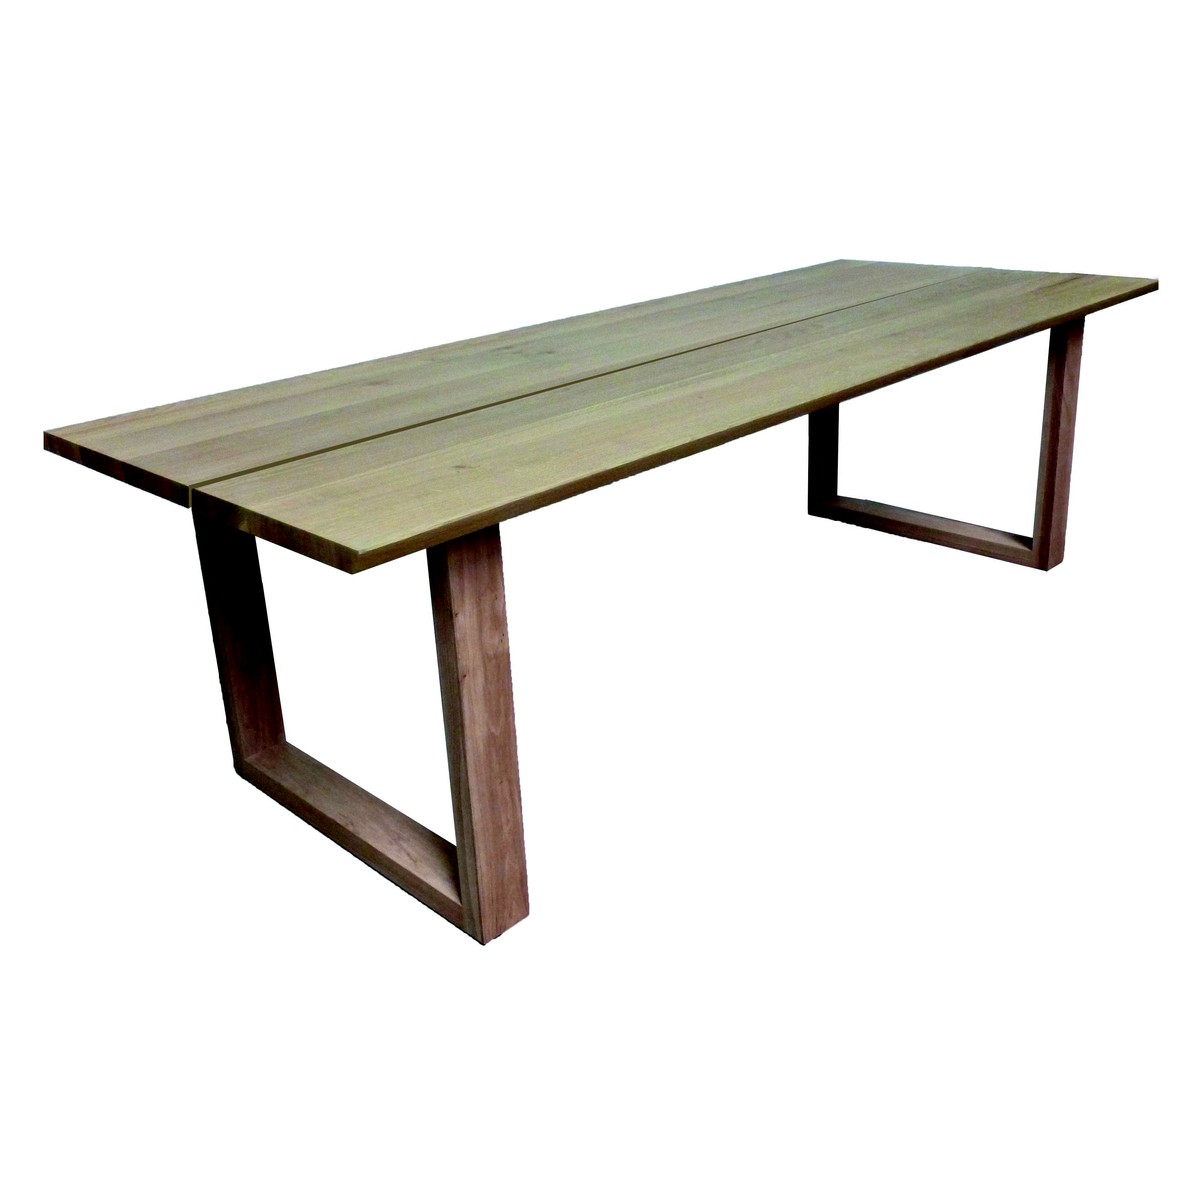   Table Zepp Droit ouvert rectangulaire  160x100x77cm